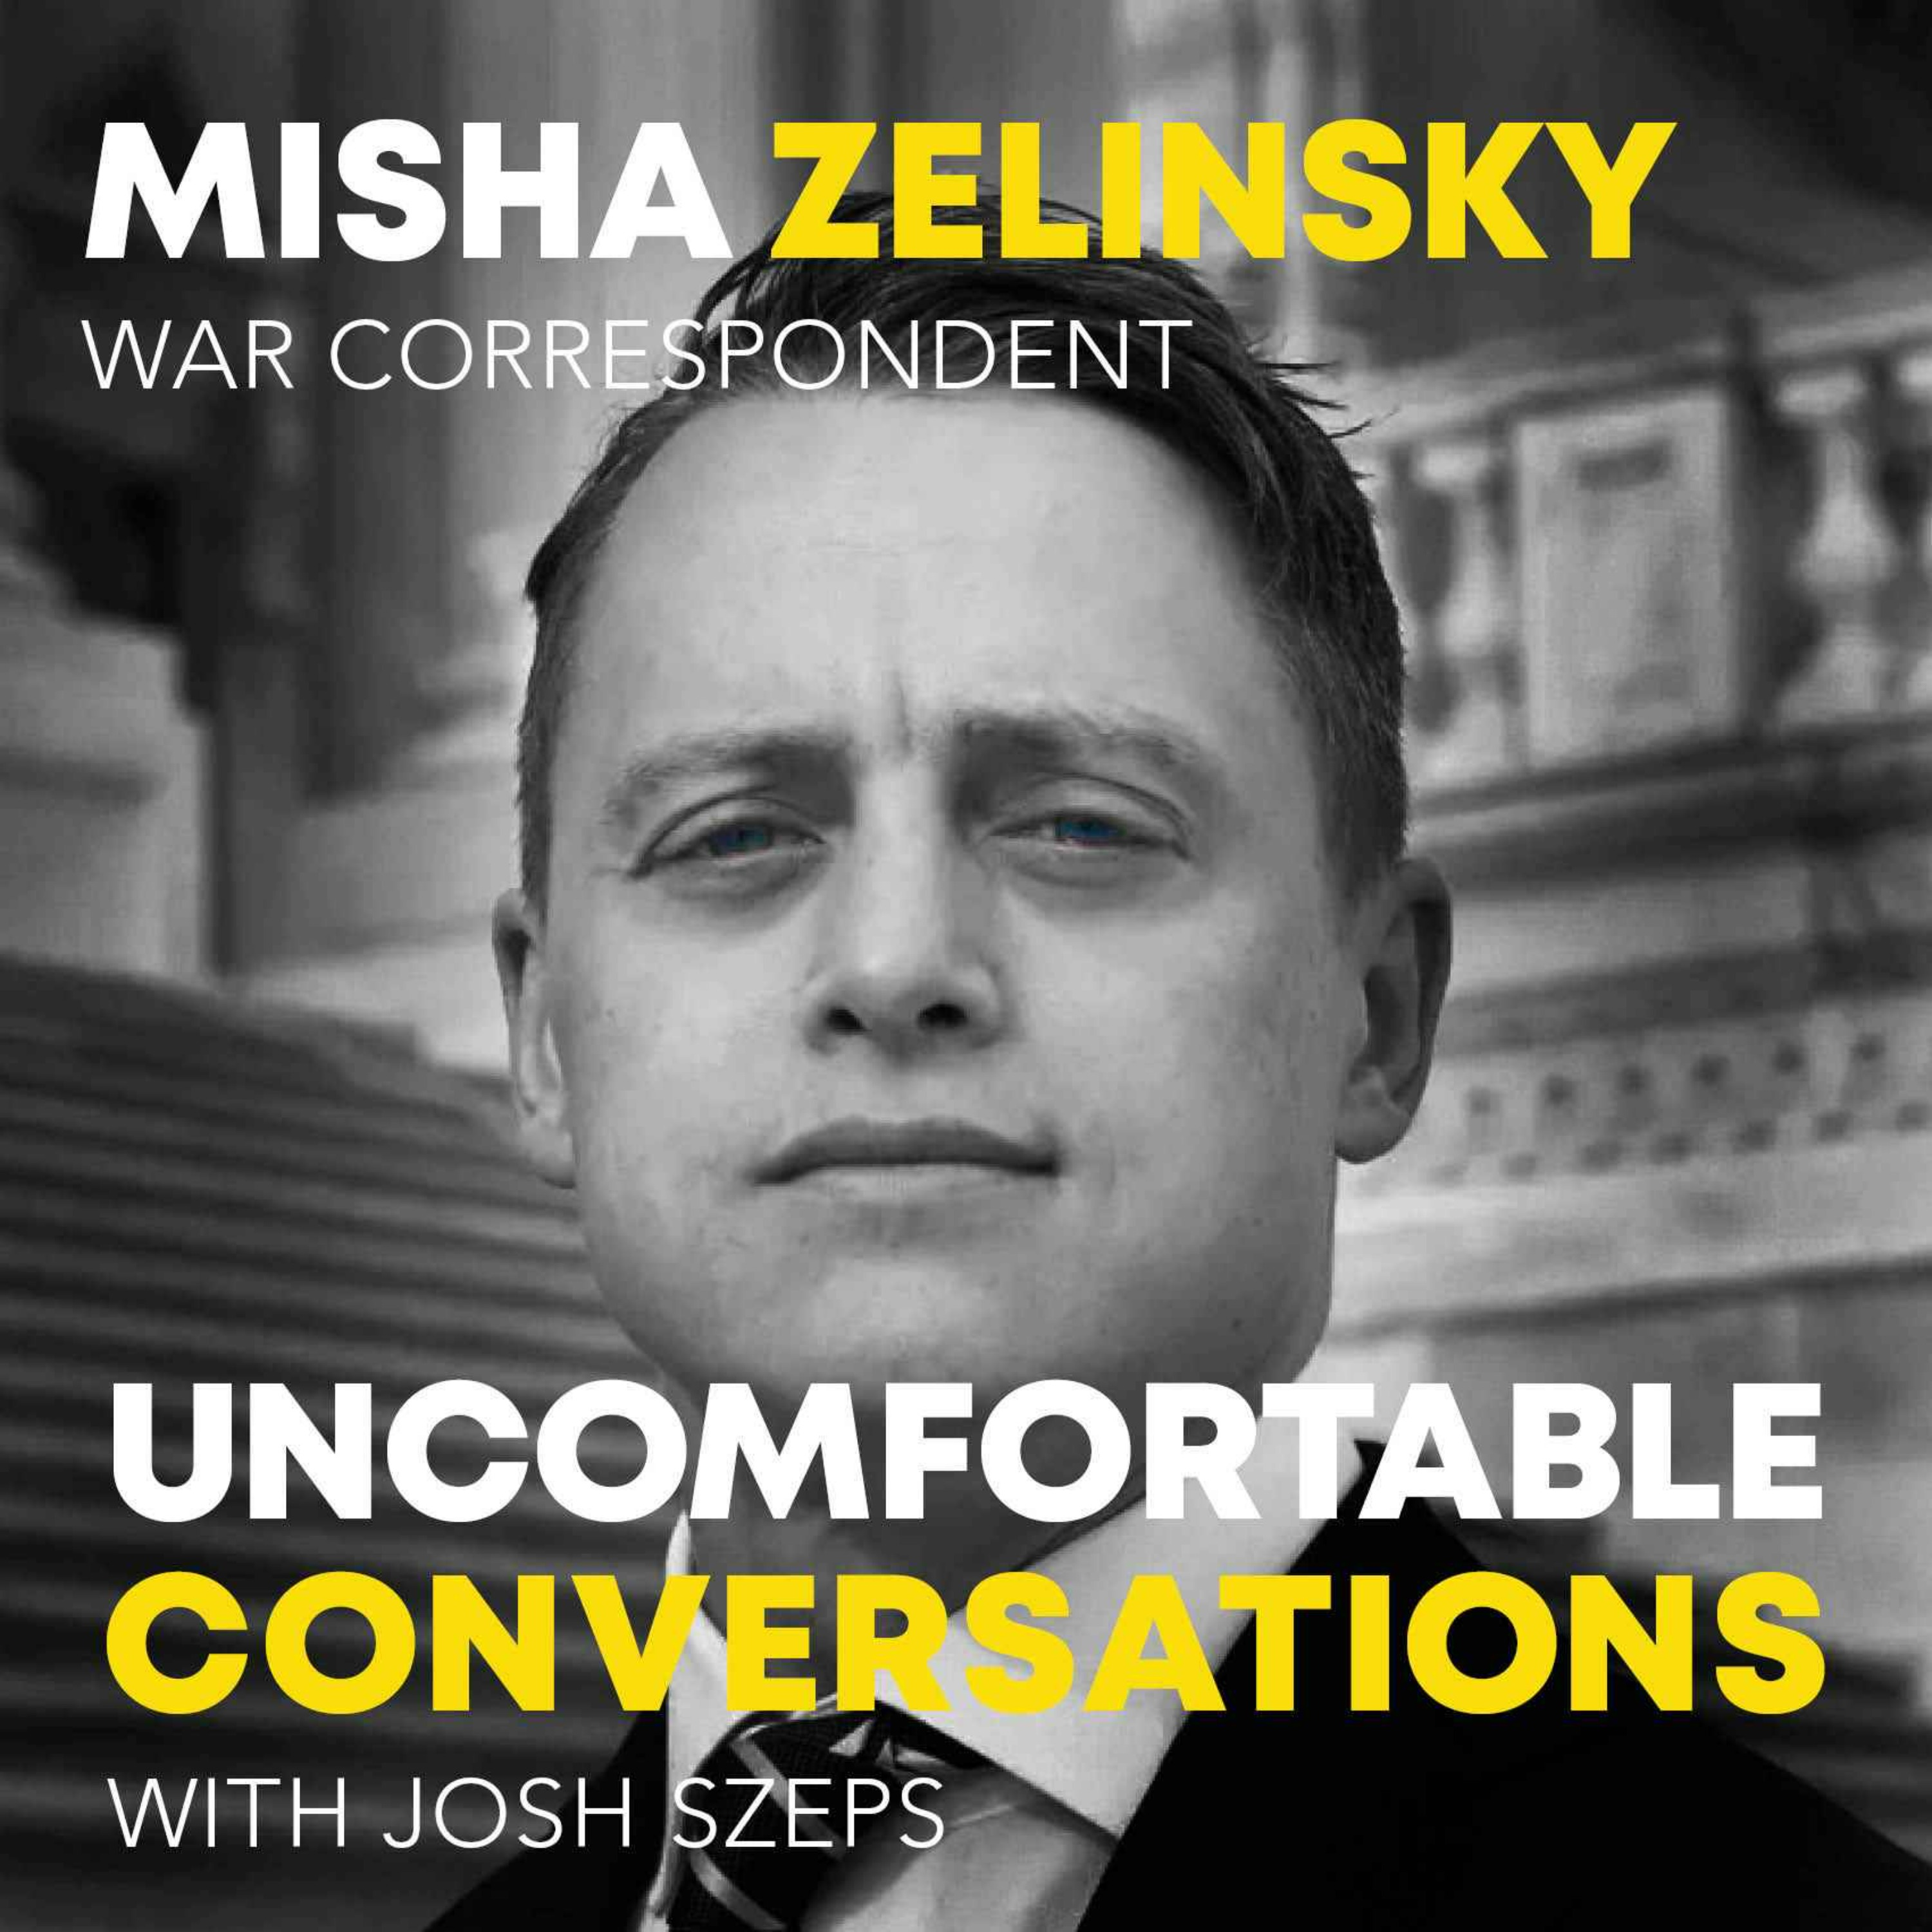 "War Correspondent" Misha Zelinsky